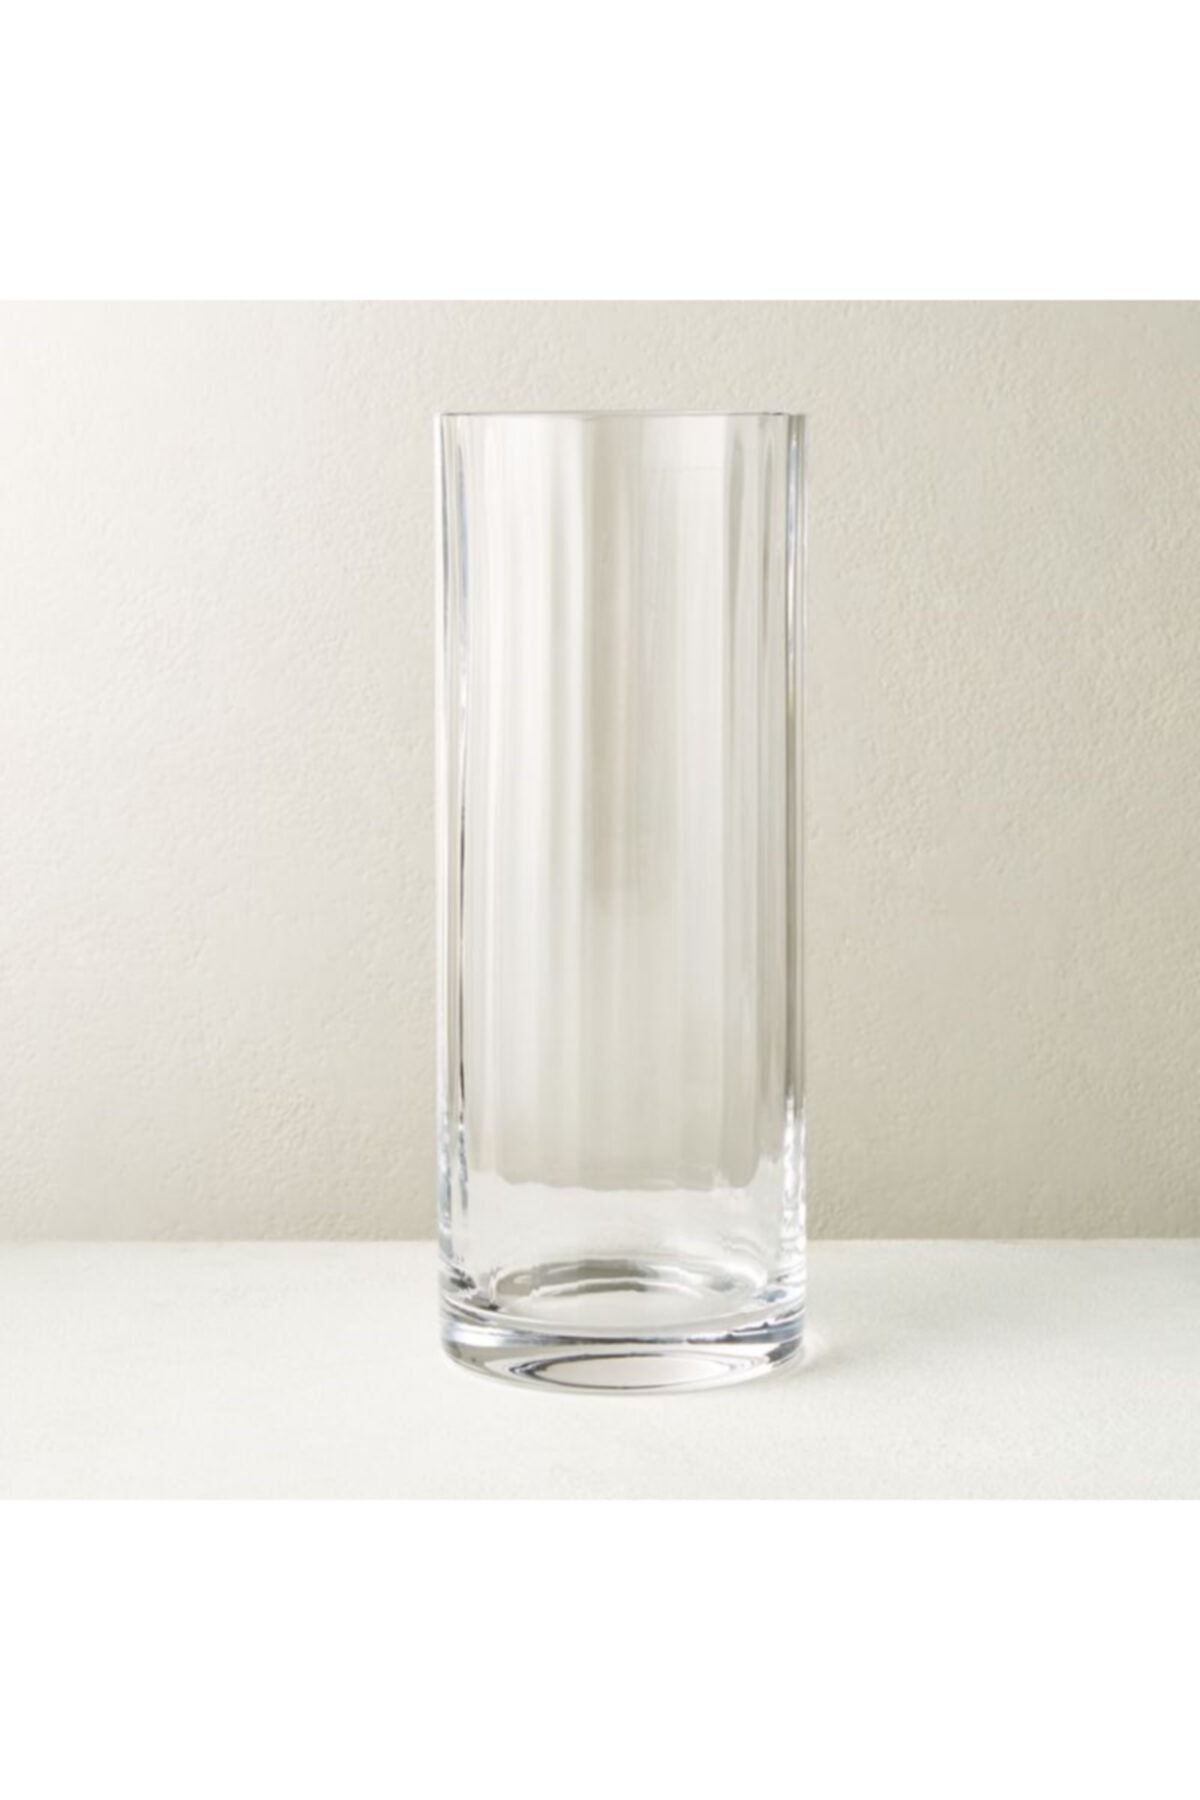 GLASSY Silindir Rölyefli Cam Vazo (15 Cm Çap-30 Cm Yükseklik)